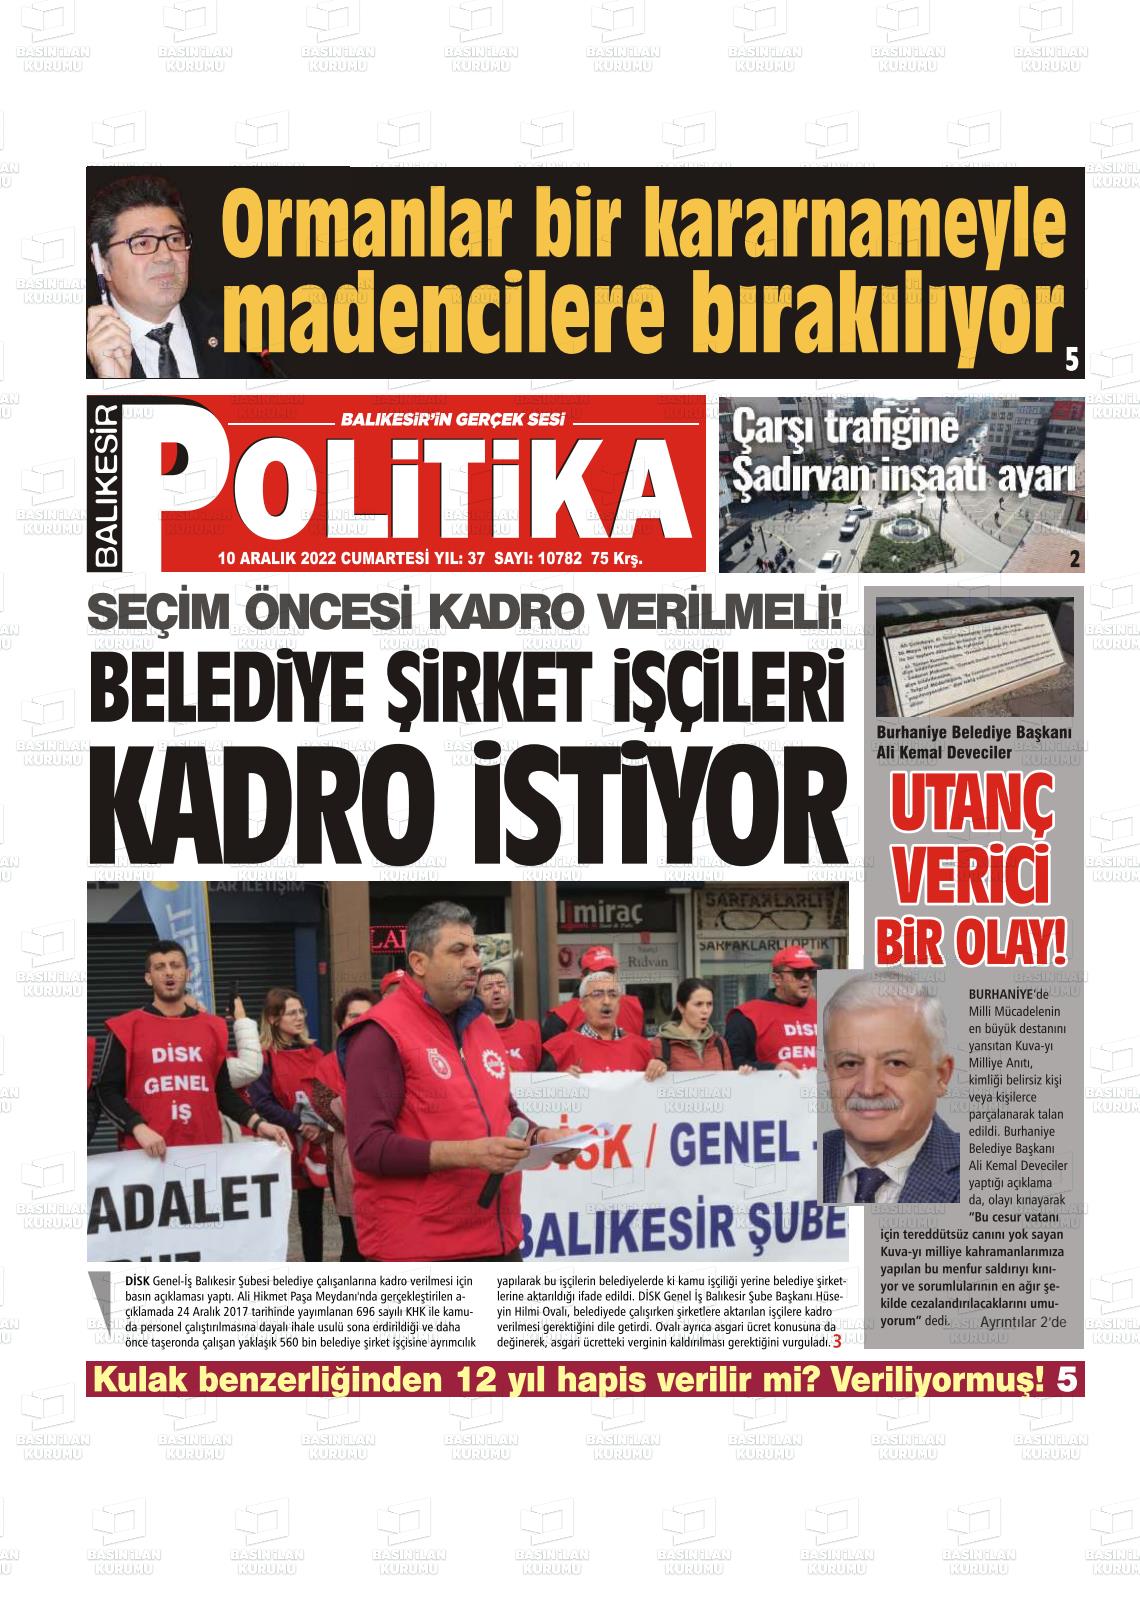 10 Aralık 2022 Balıkesir Politika Gazete Manşeti